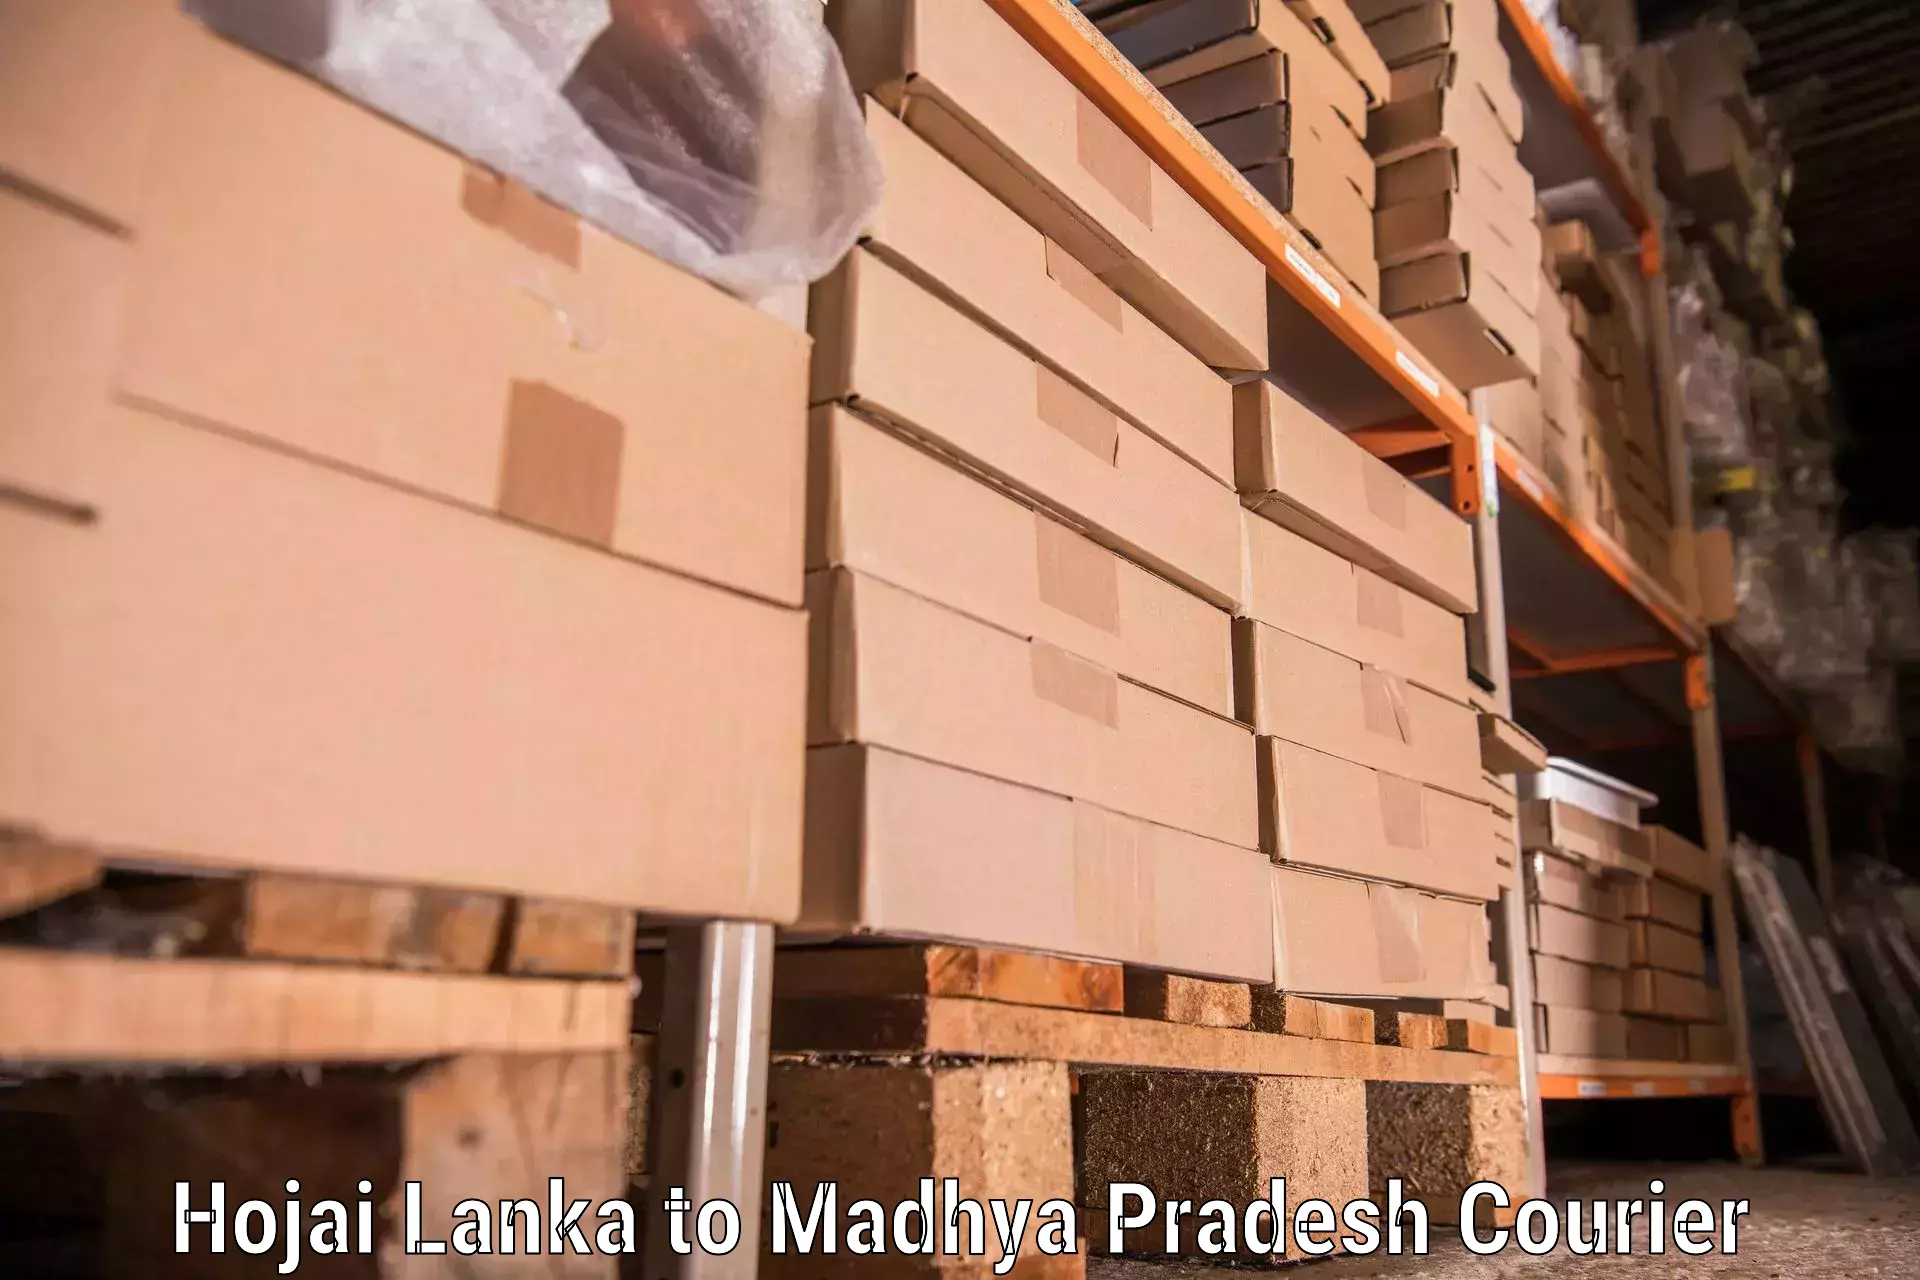 Professional furniture moving Hojai Lanka to Sabalgarh